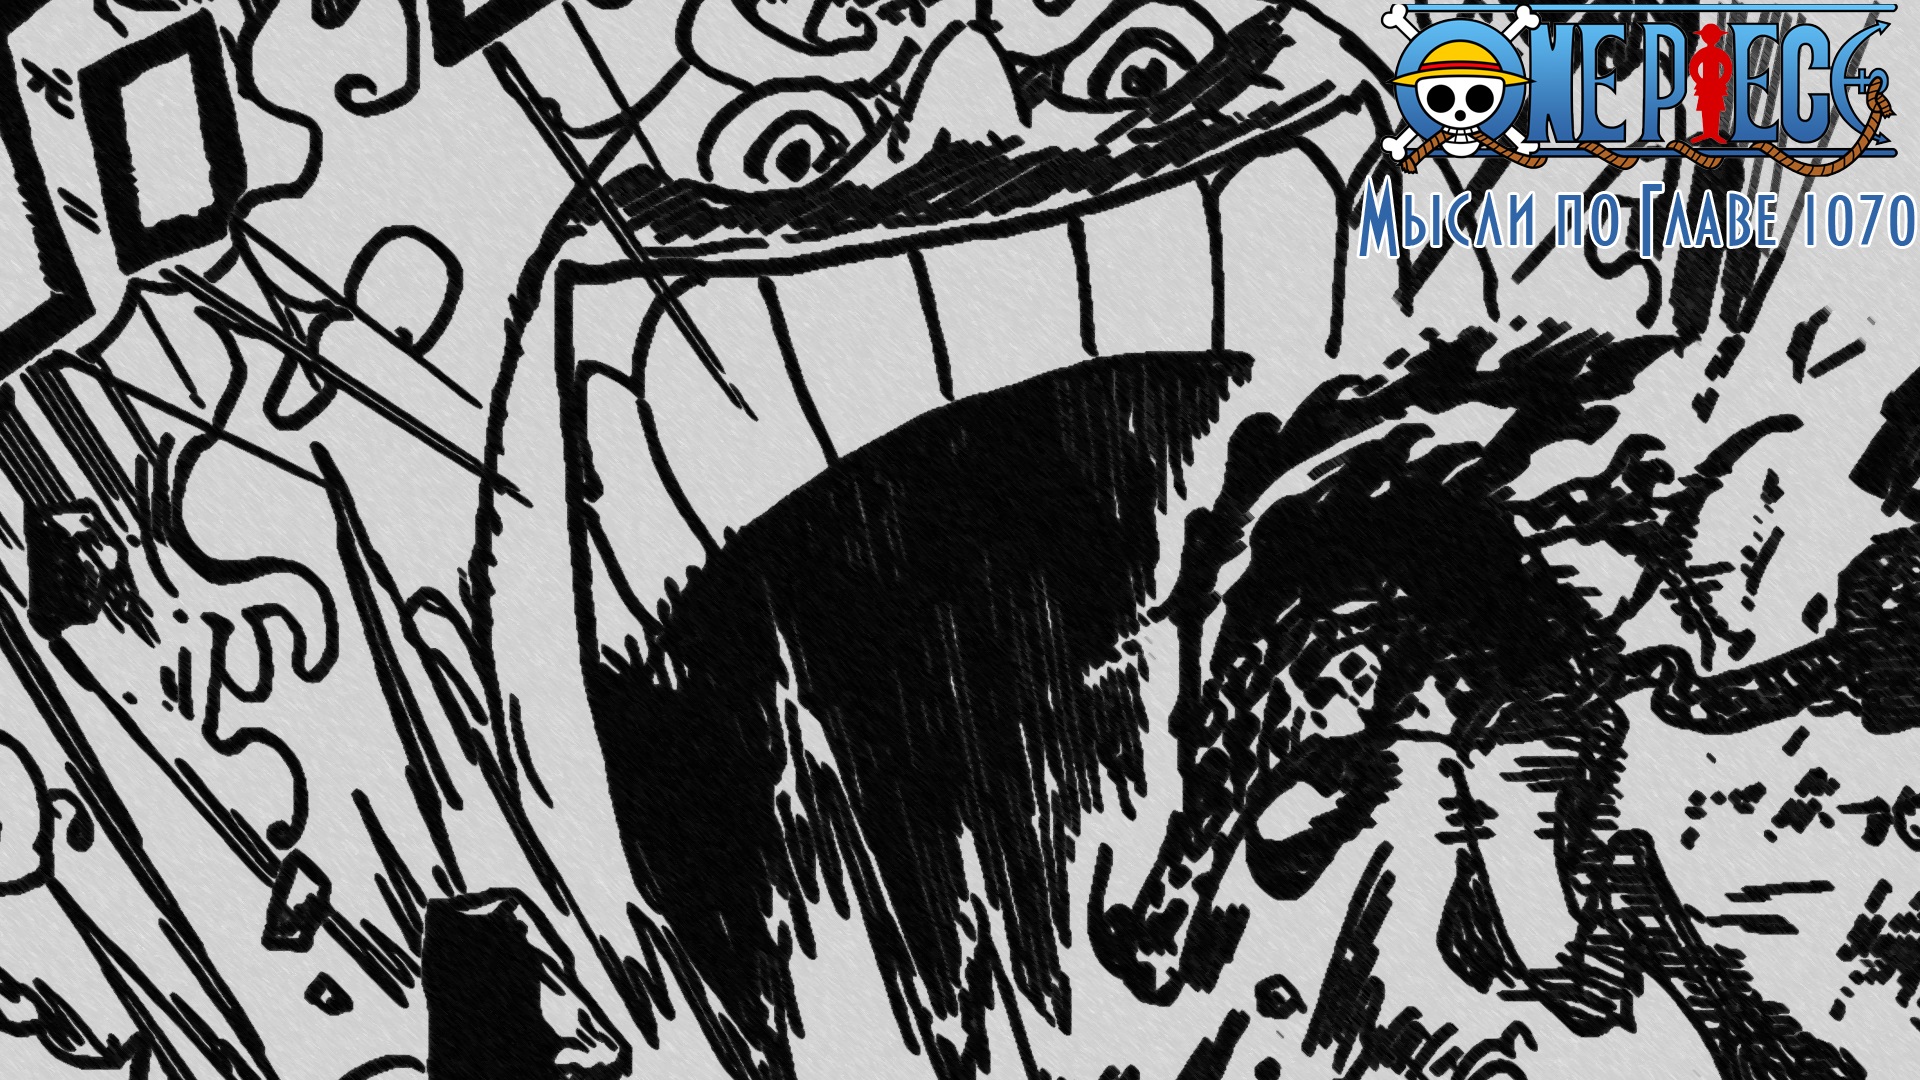 Первые действия Мугивар как Йонко | Мысли по Главе 1070 | One Piece